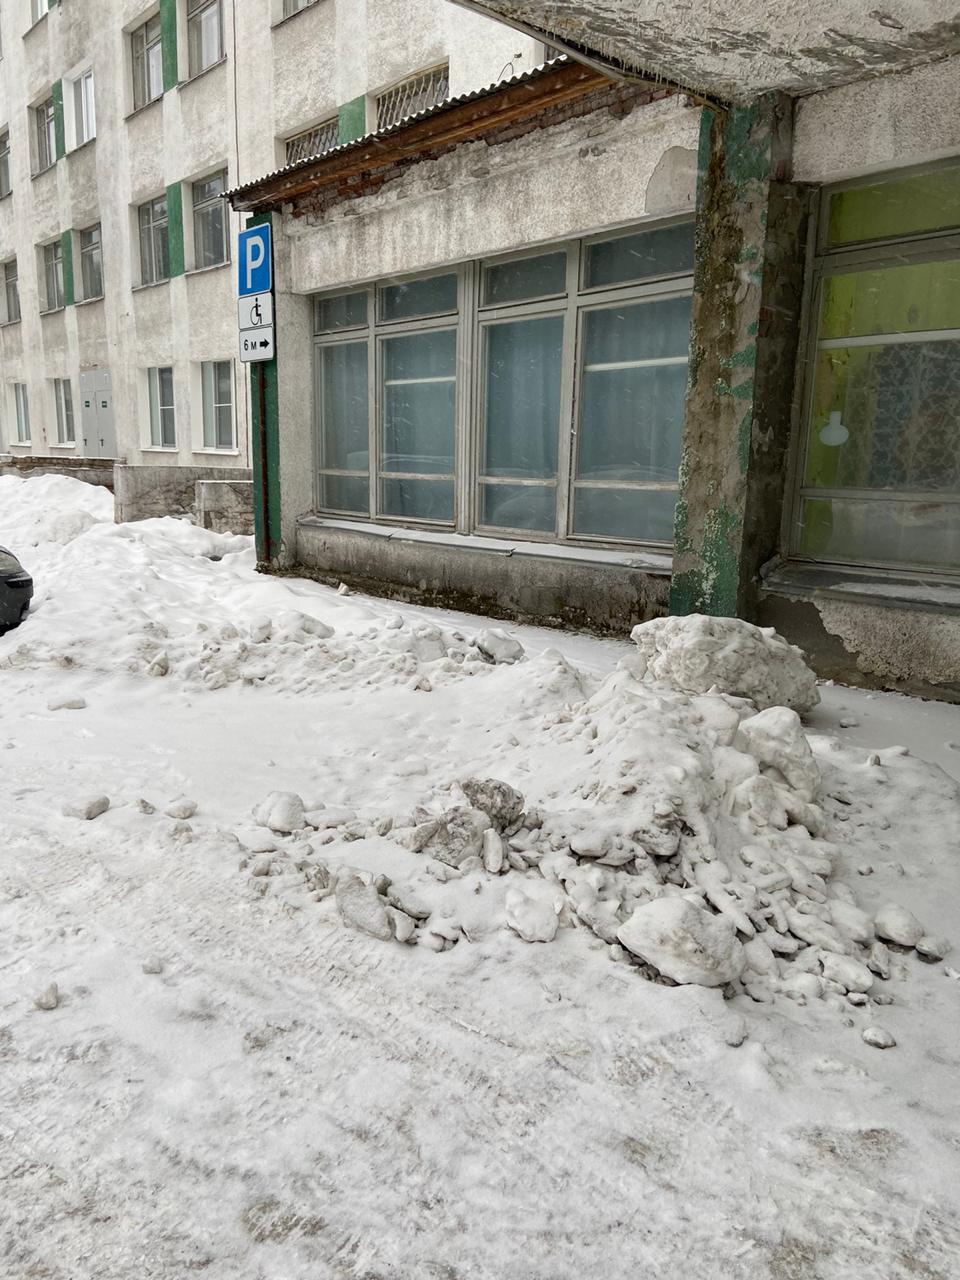 Горожанка возмущена уборкой снега на парковке для инвалидов. В мэрии обещали разобраться